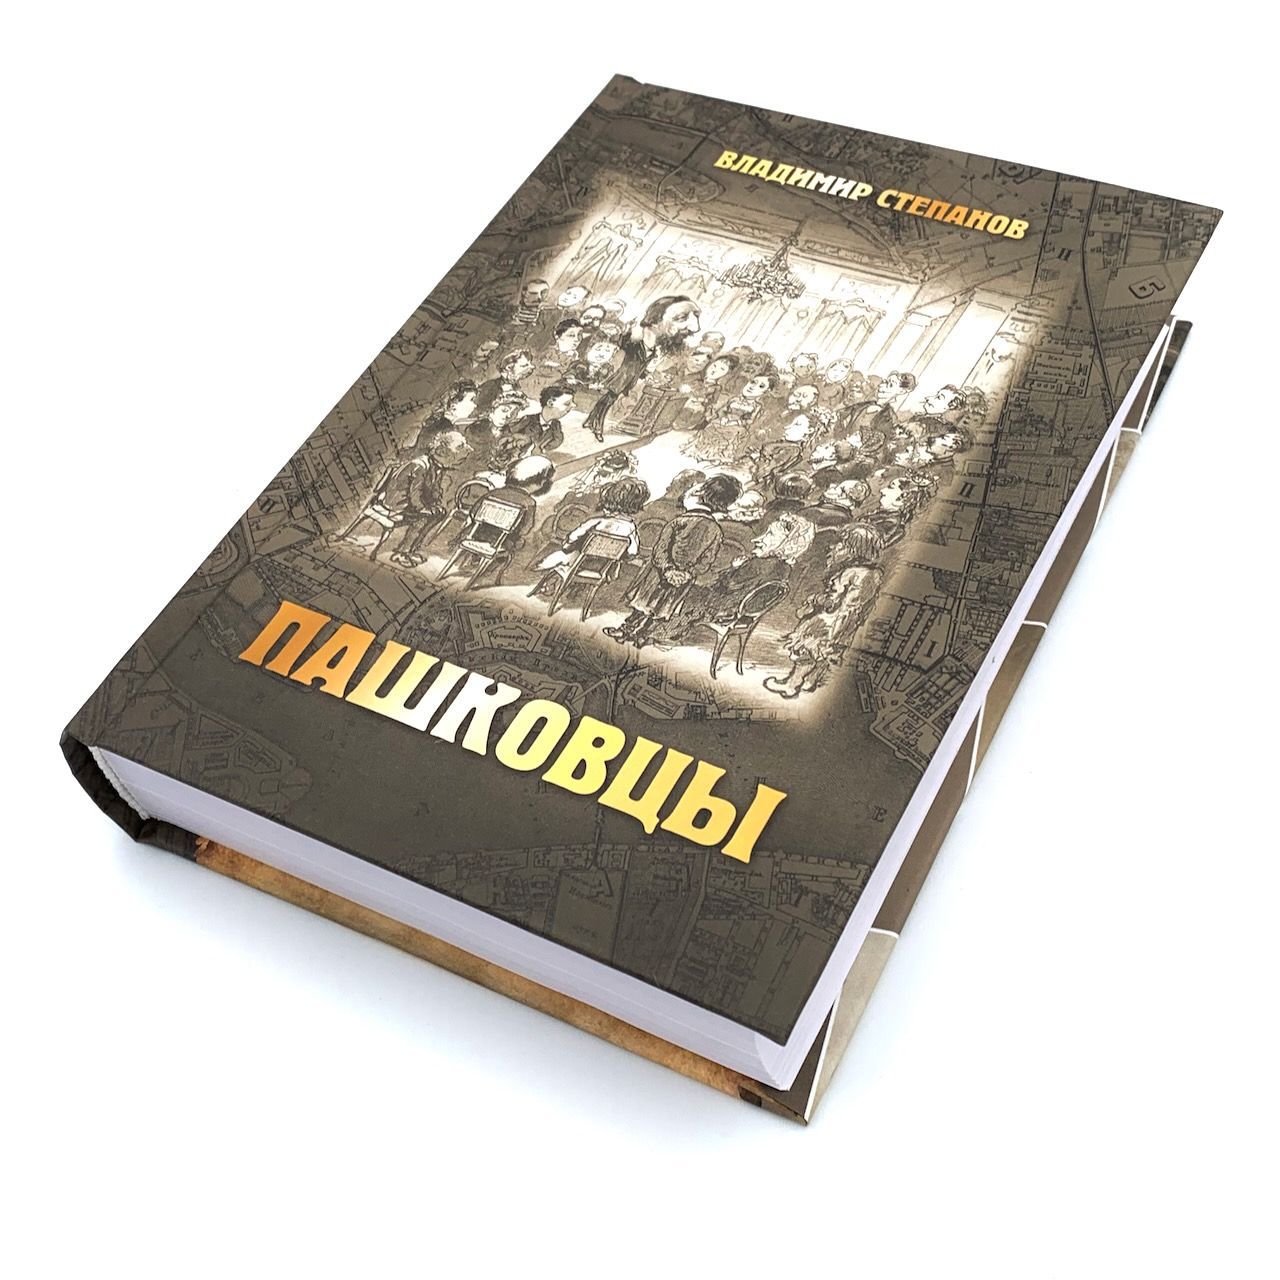 Пашковцы: сборник статей и документов по истории и богословию движения (1874-1920)